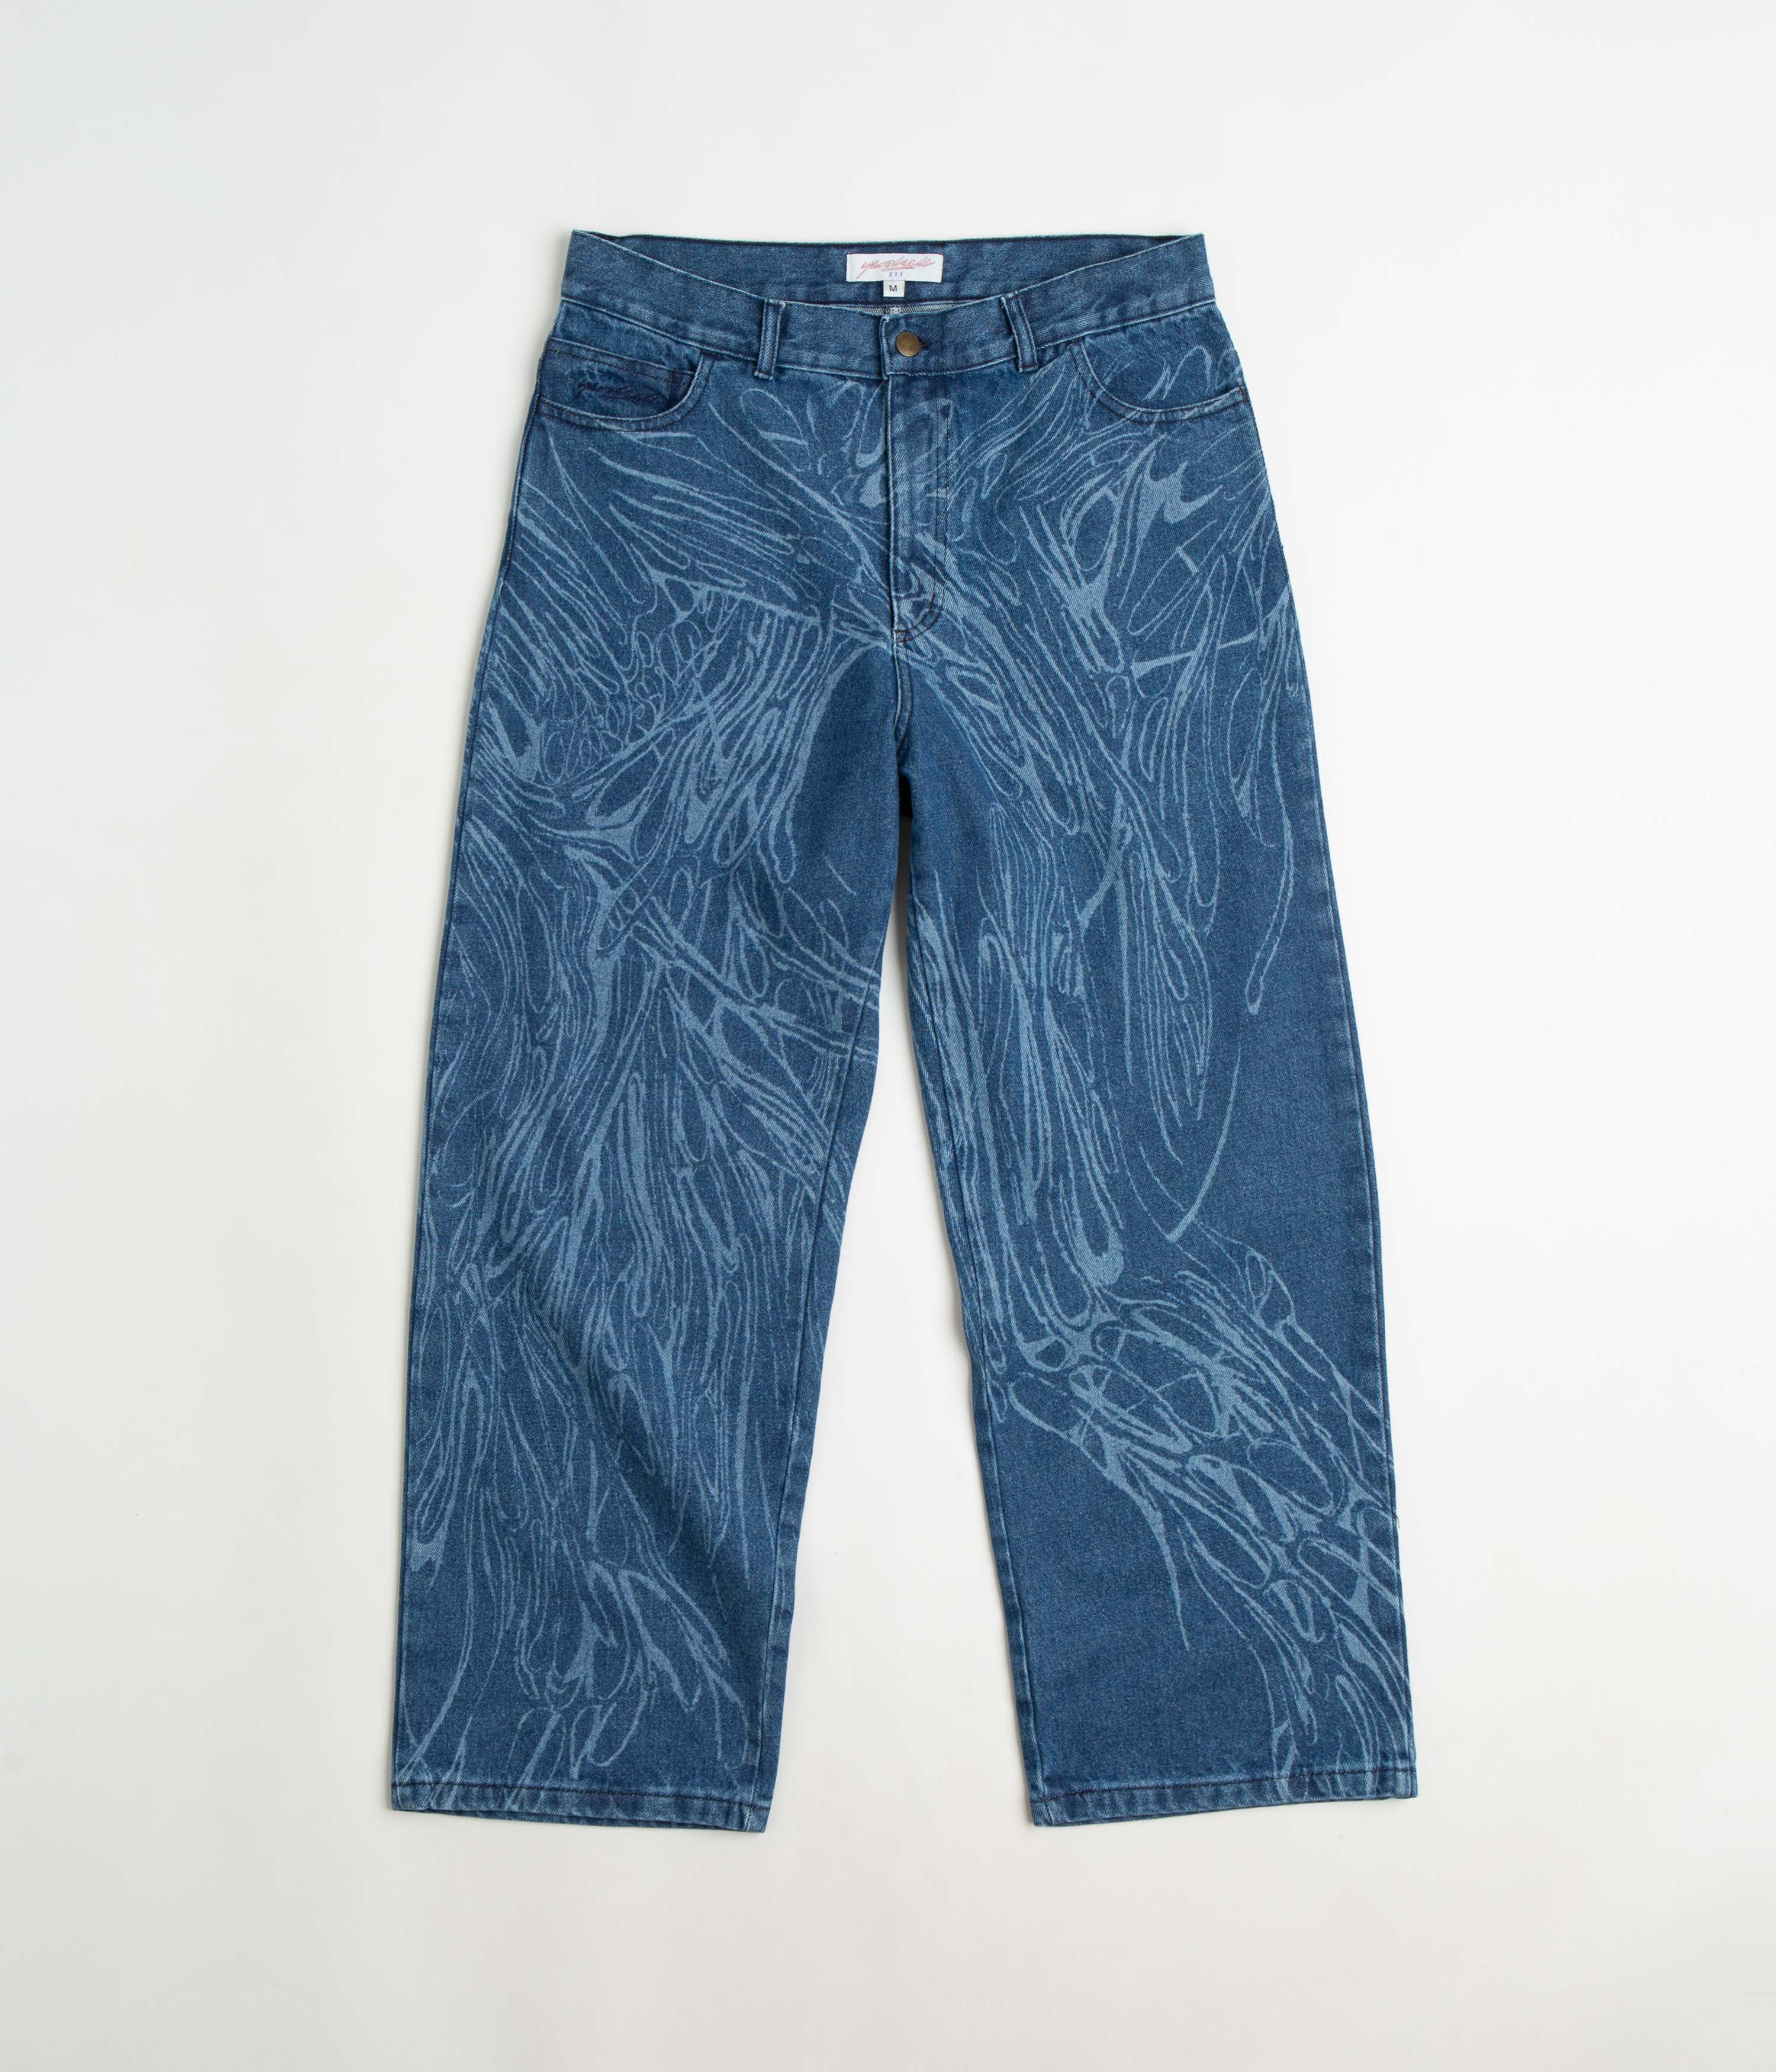 yardsale ripper jeans